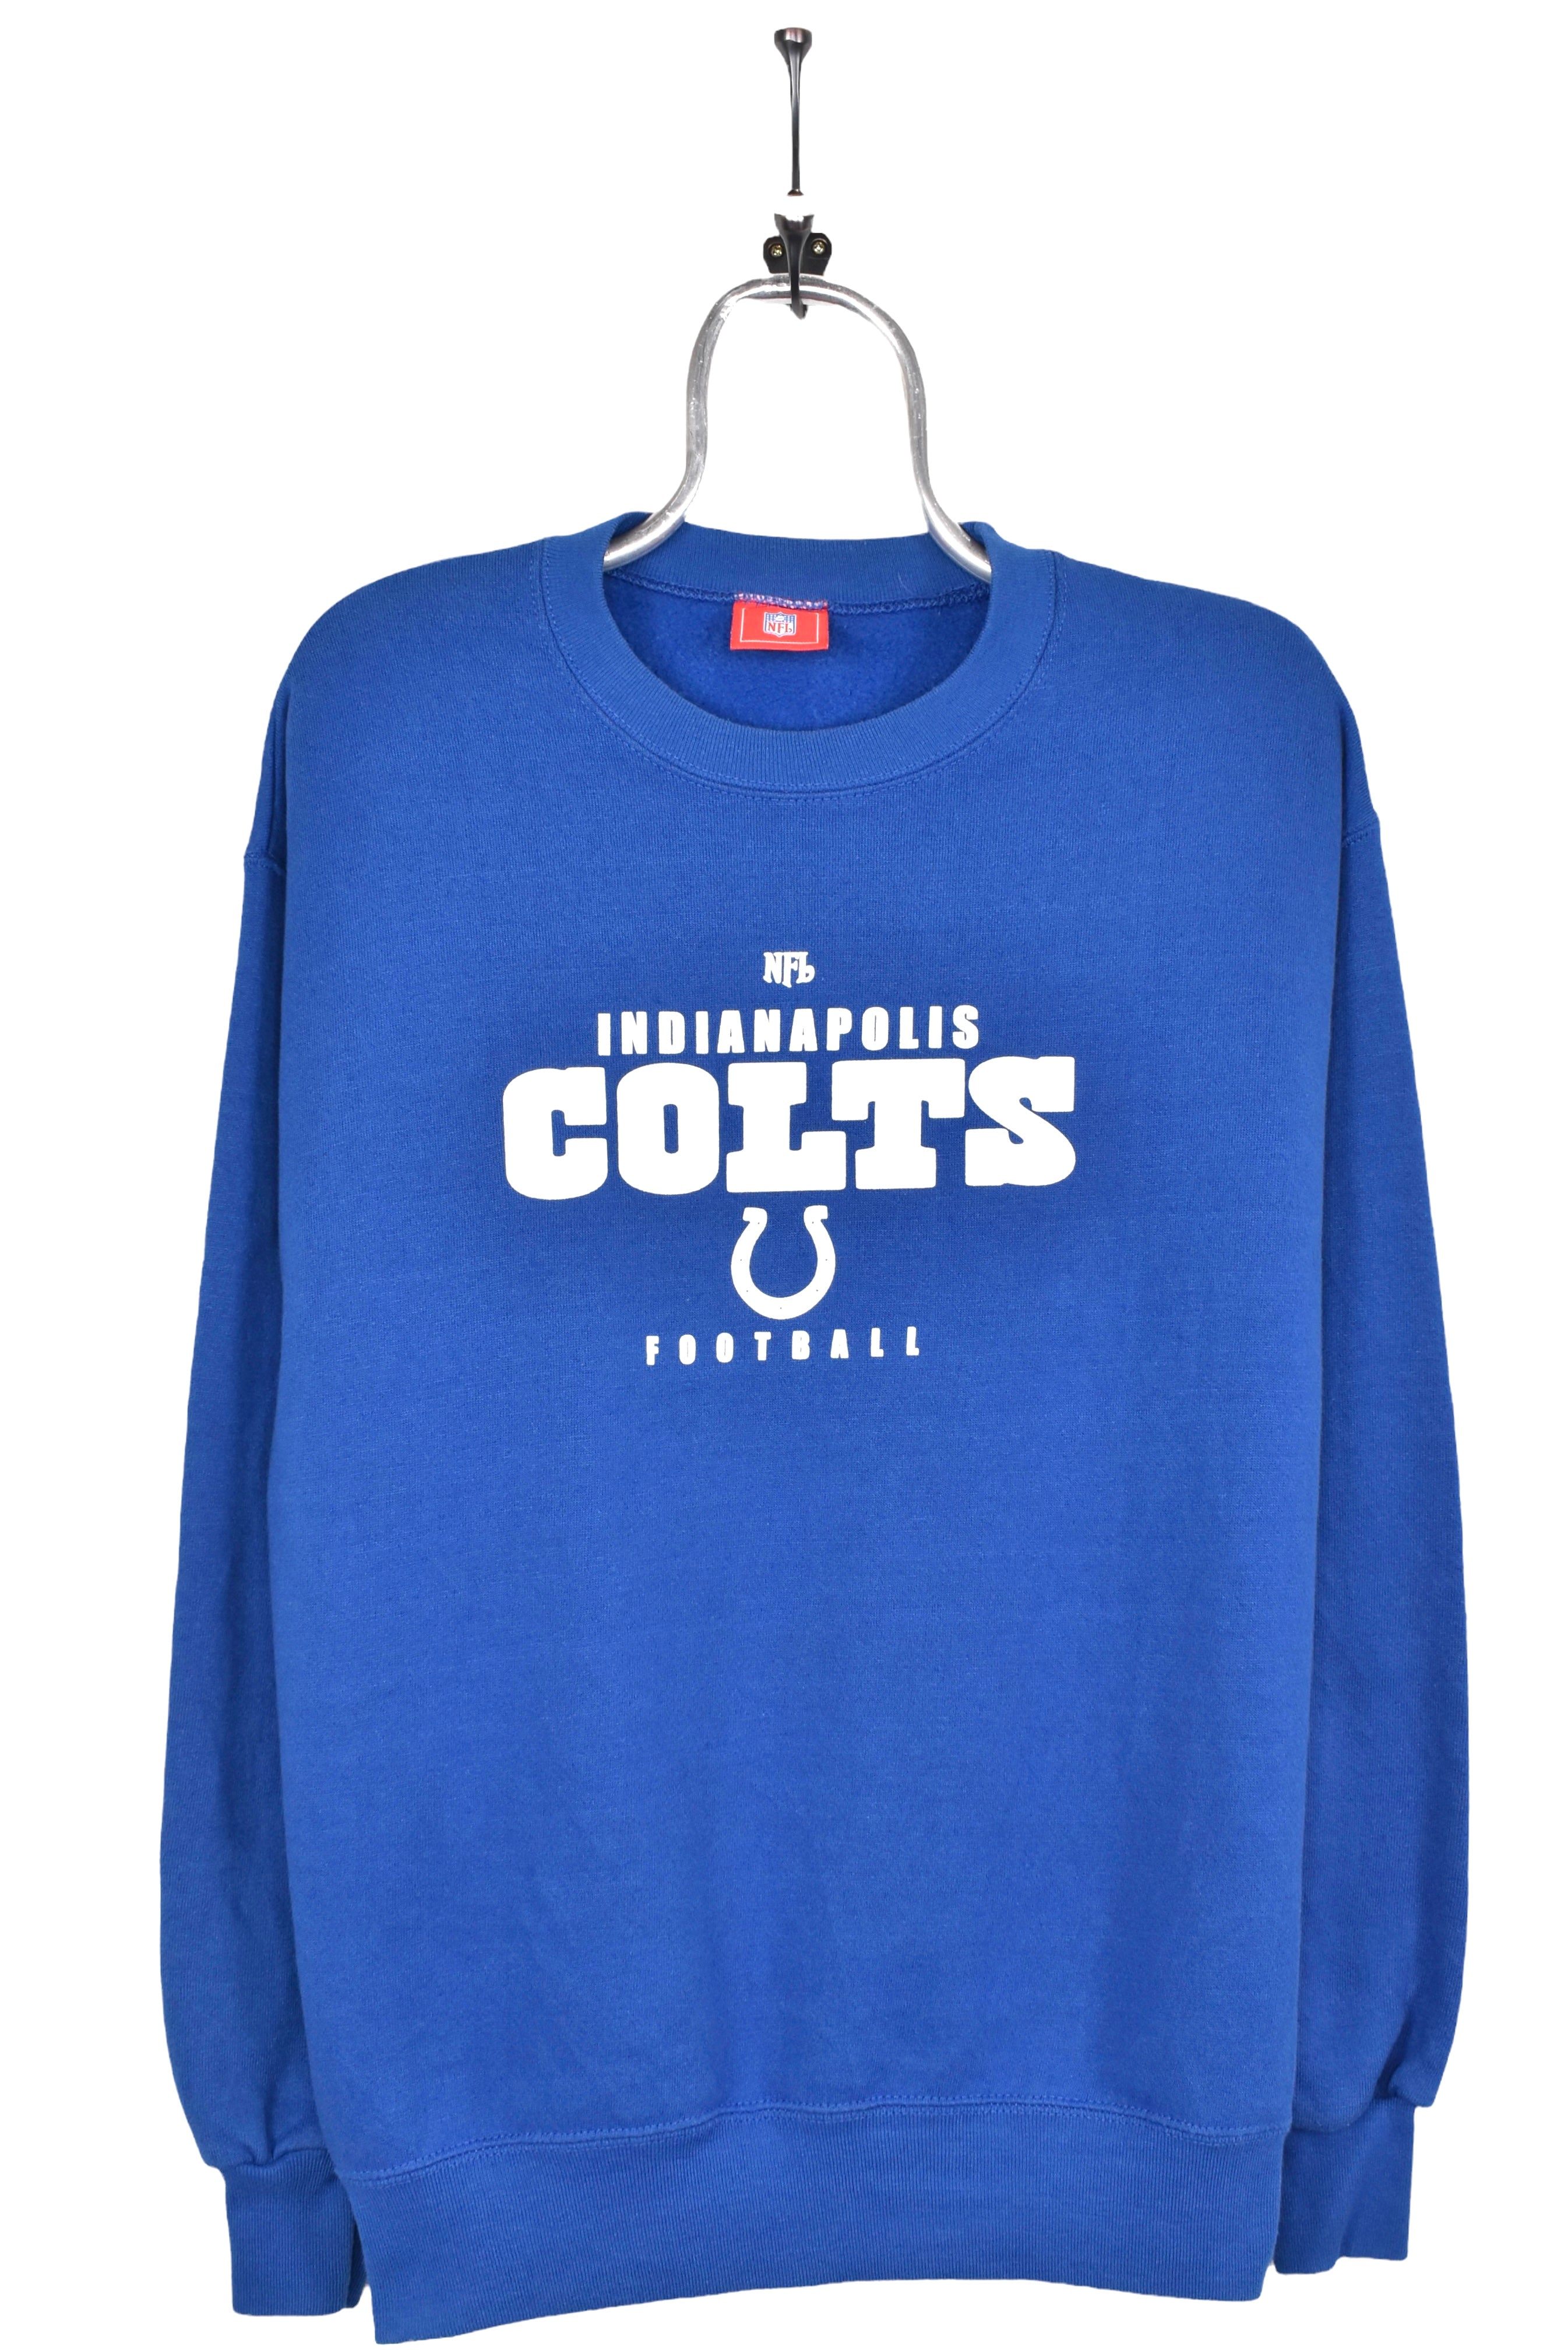 Vintage Indianapolis Colts sweatshirt, NFL blue graphic crewneck - AU Large PRO SPORT